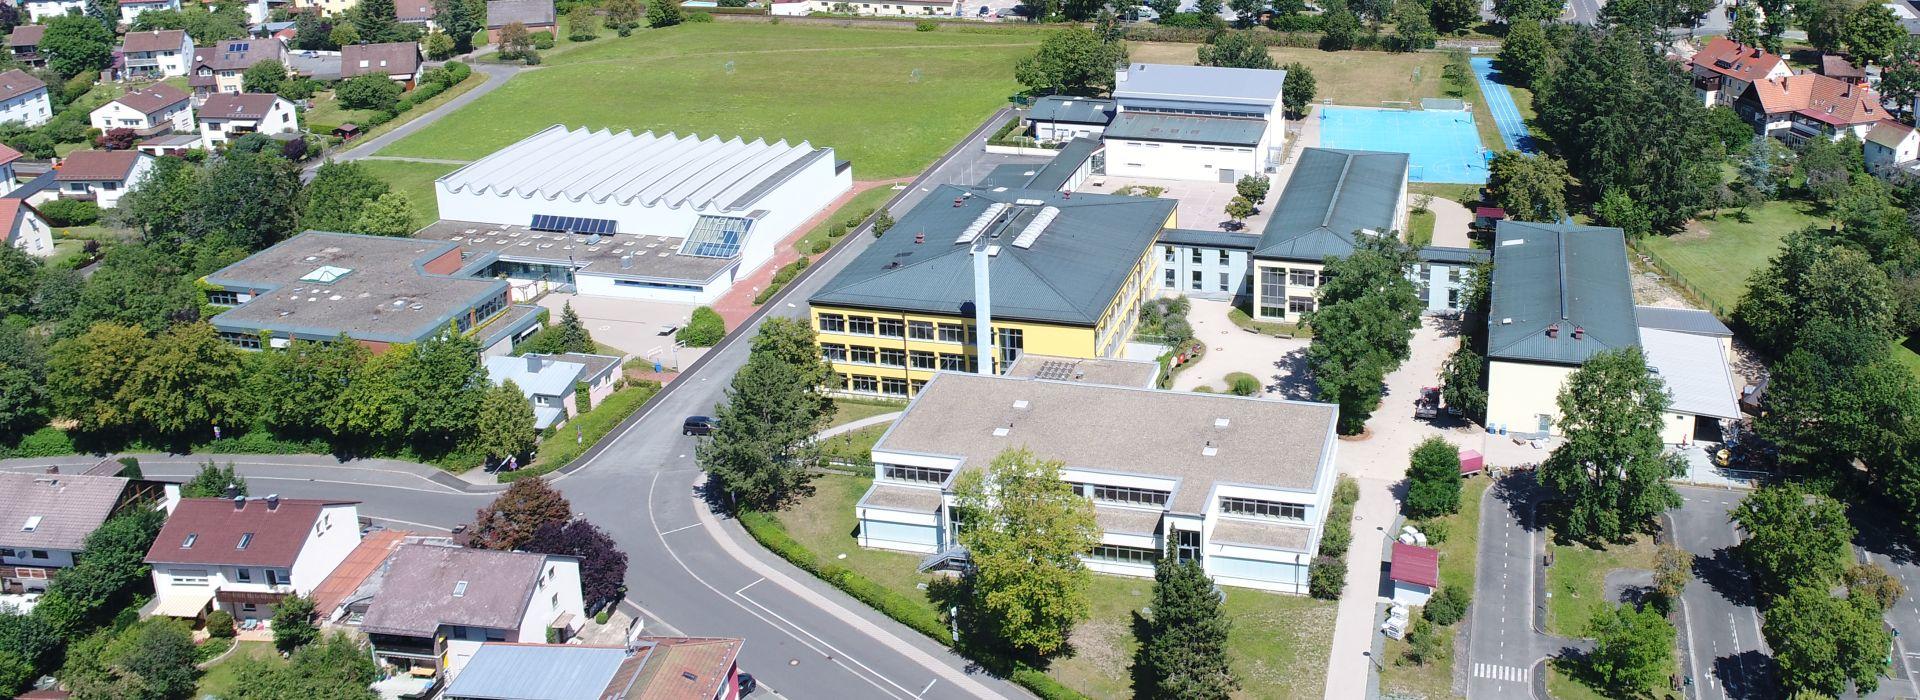 Luftbild Schulen Weidenberg